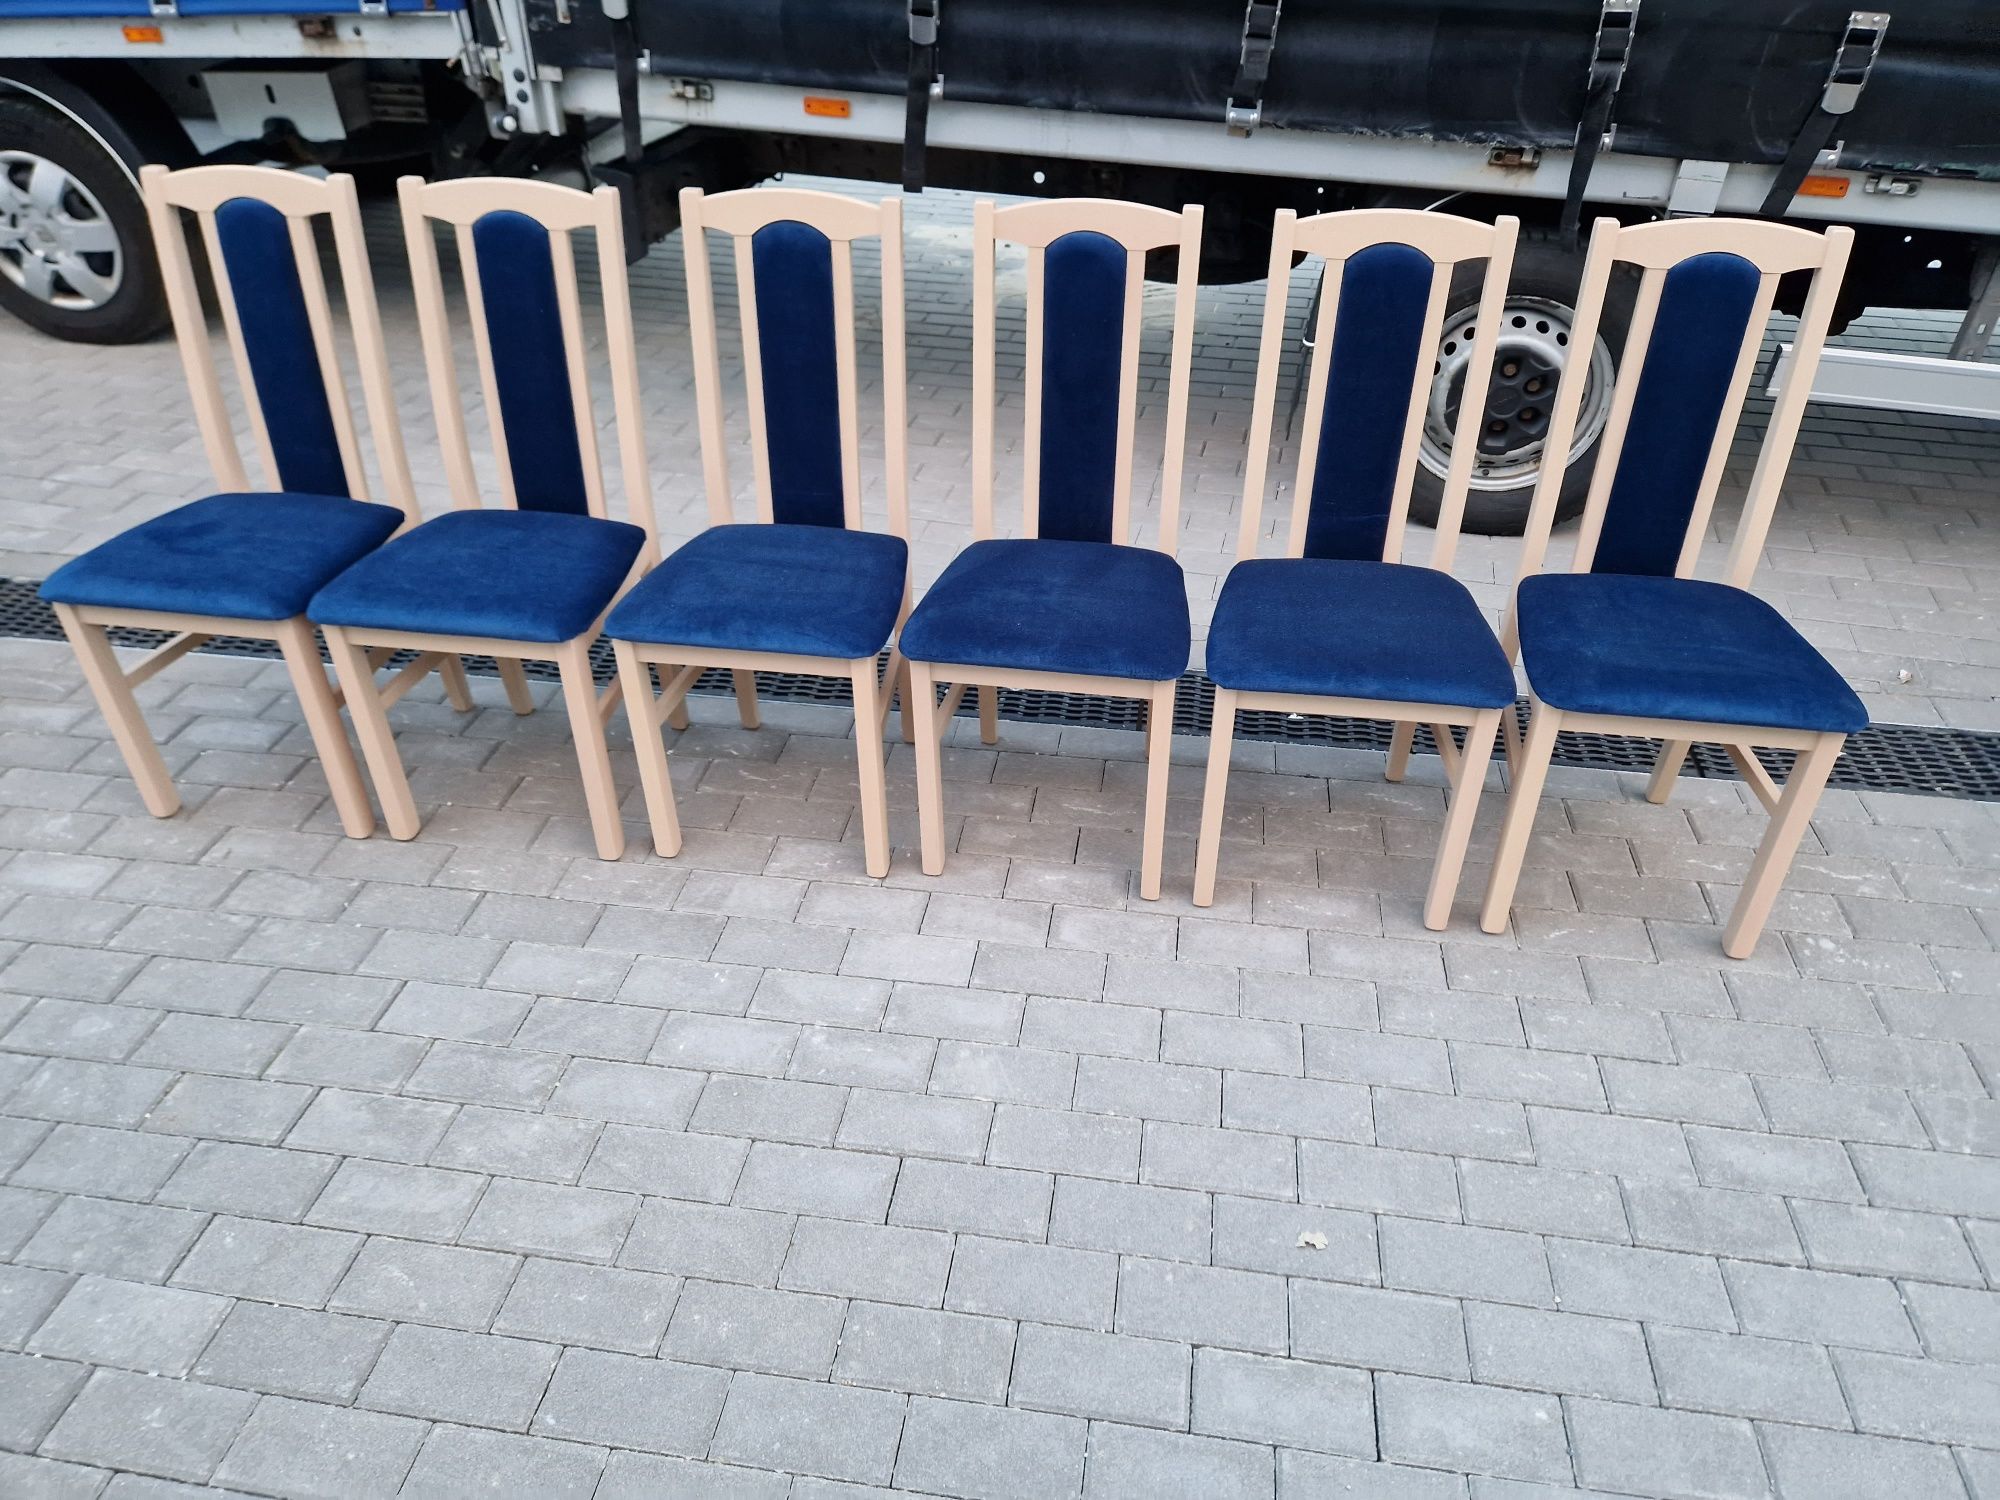 Nowe: Stół 80x140/180 + 6 krzeseł, sonoma + granatowy, dostawa PL